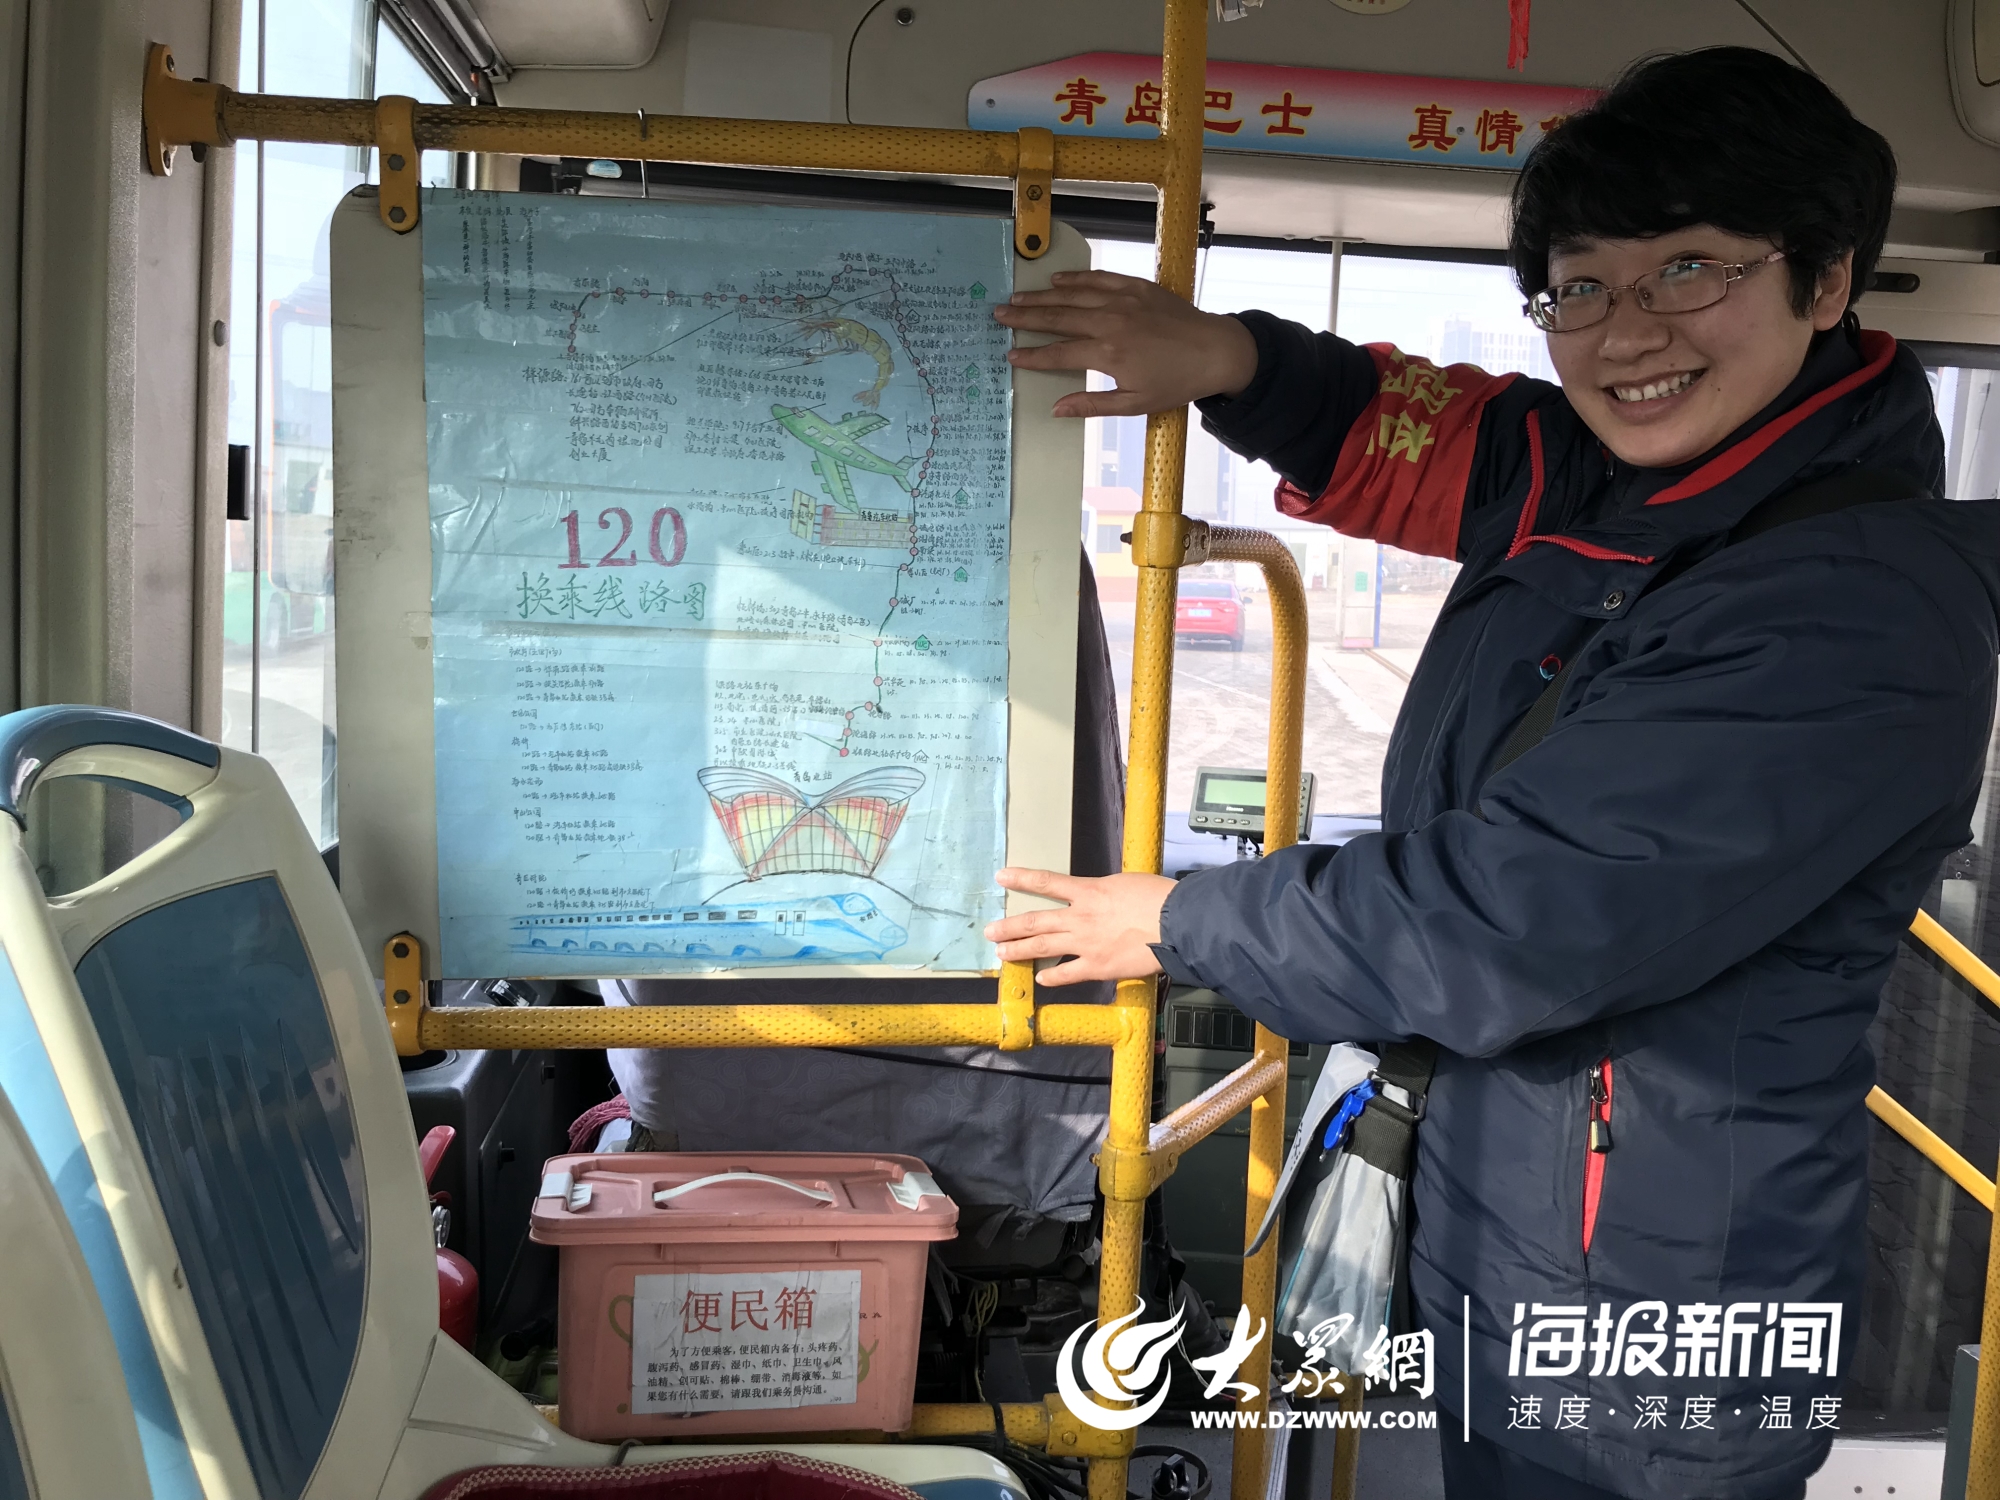 青岛公交乘务员手绘120路公交线路图 生动画出上千处地标_青岛原创_总部_青岛大众网